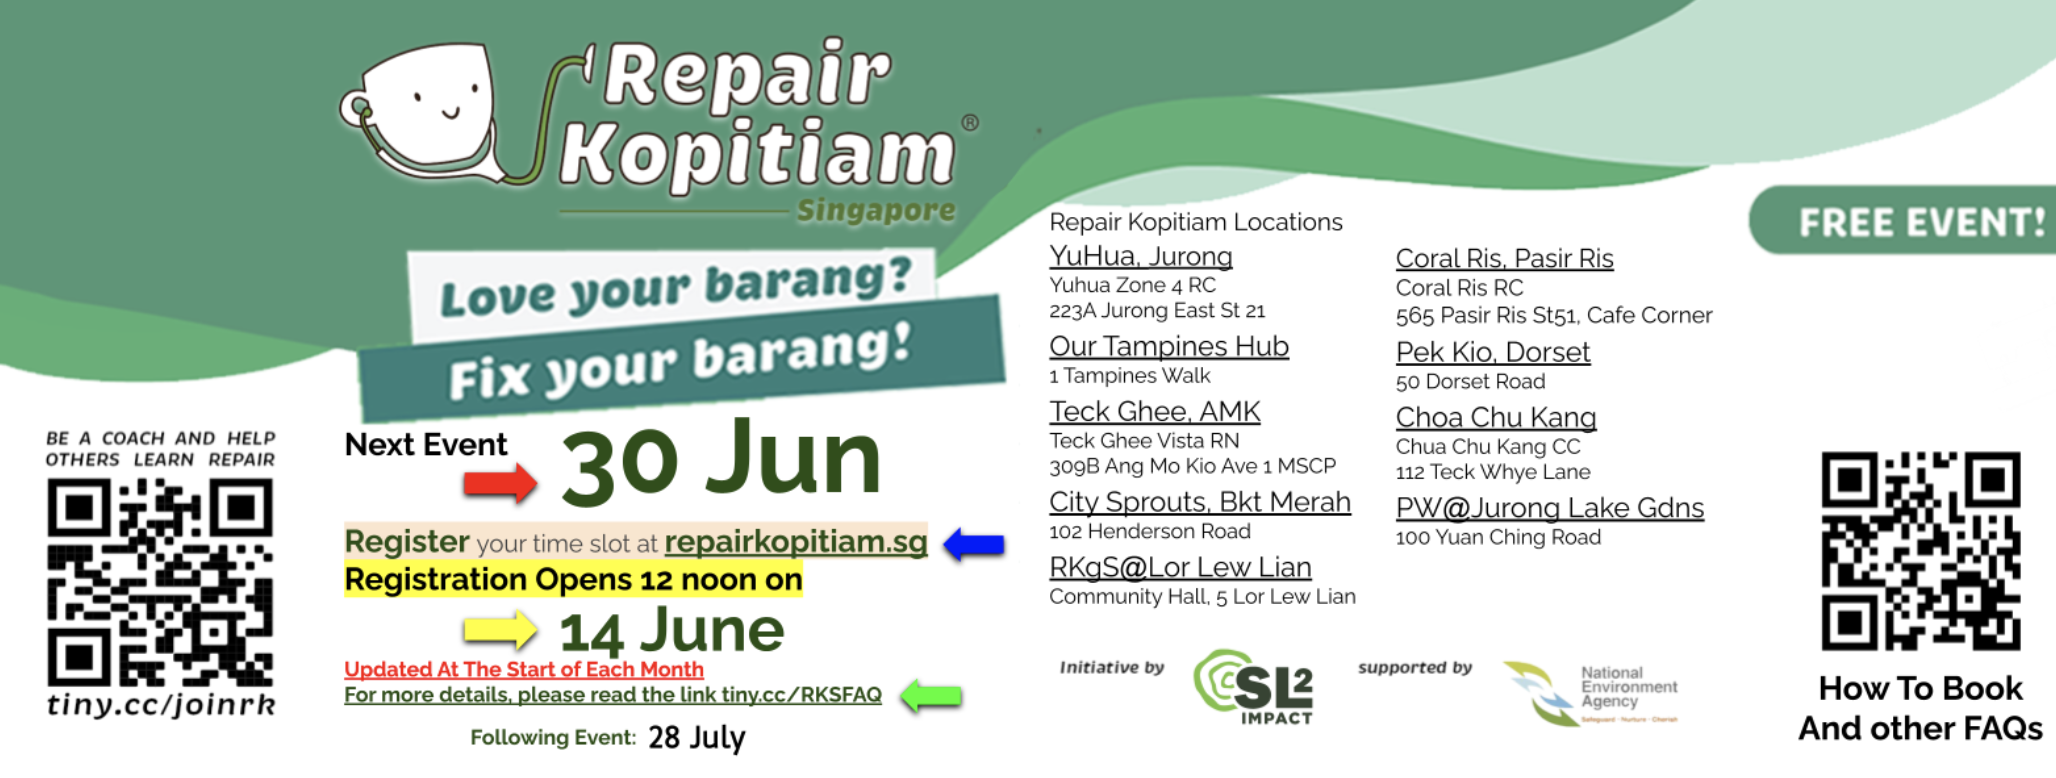 repair kopitiam June event